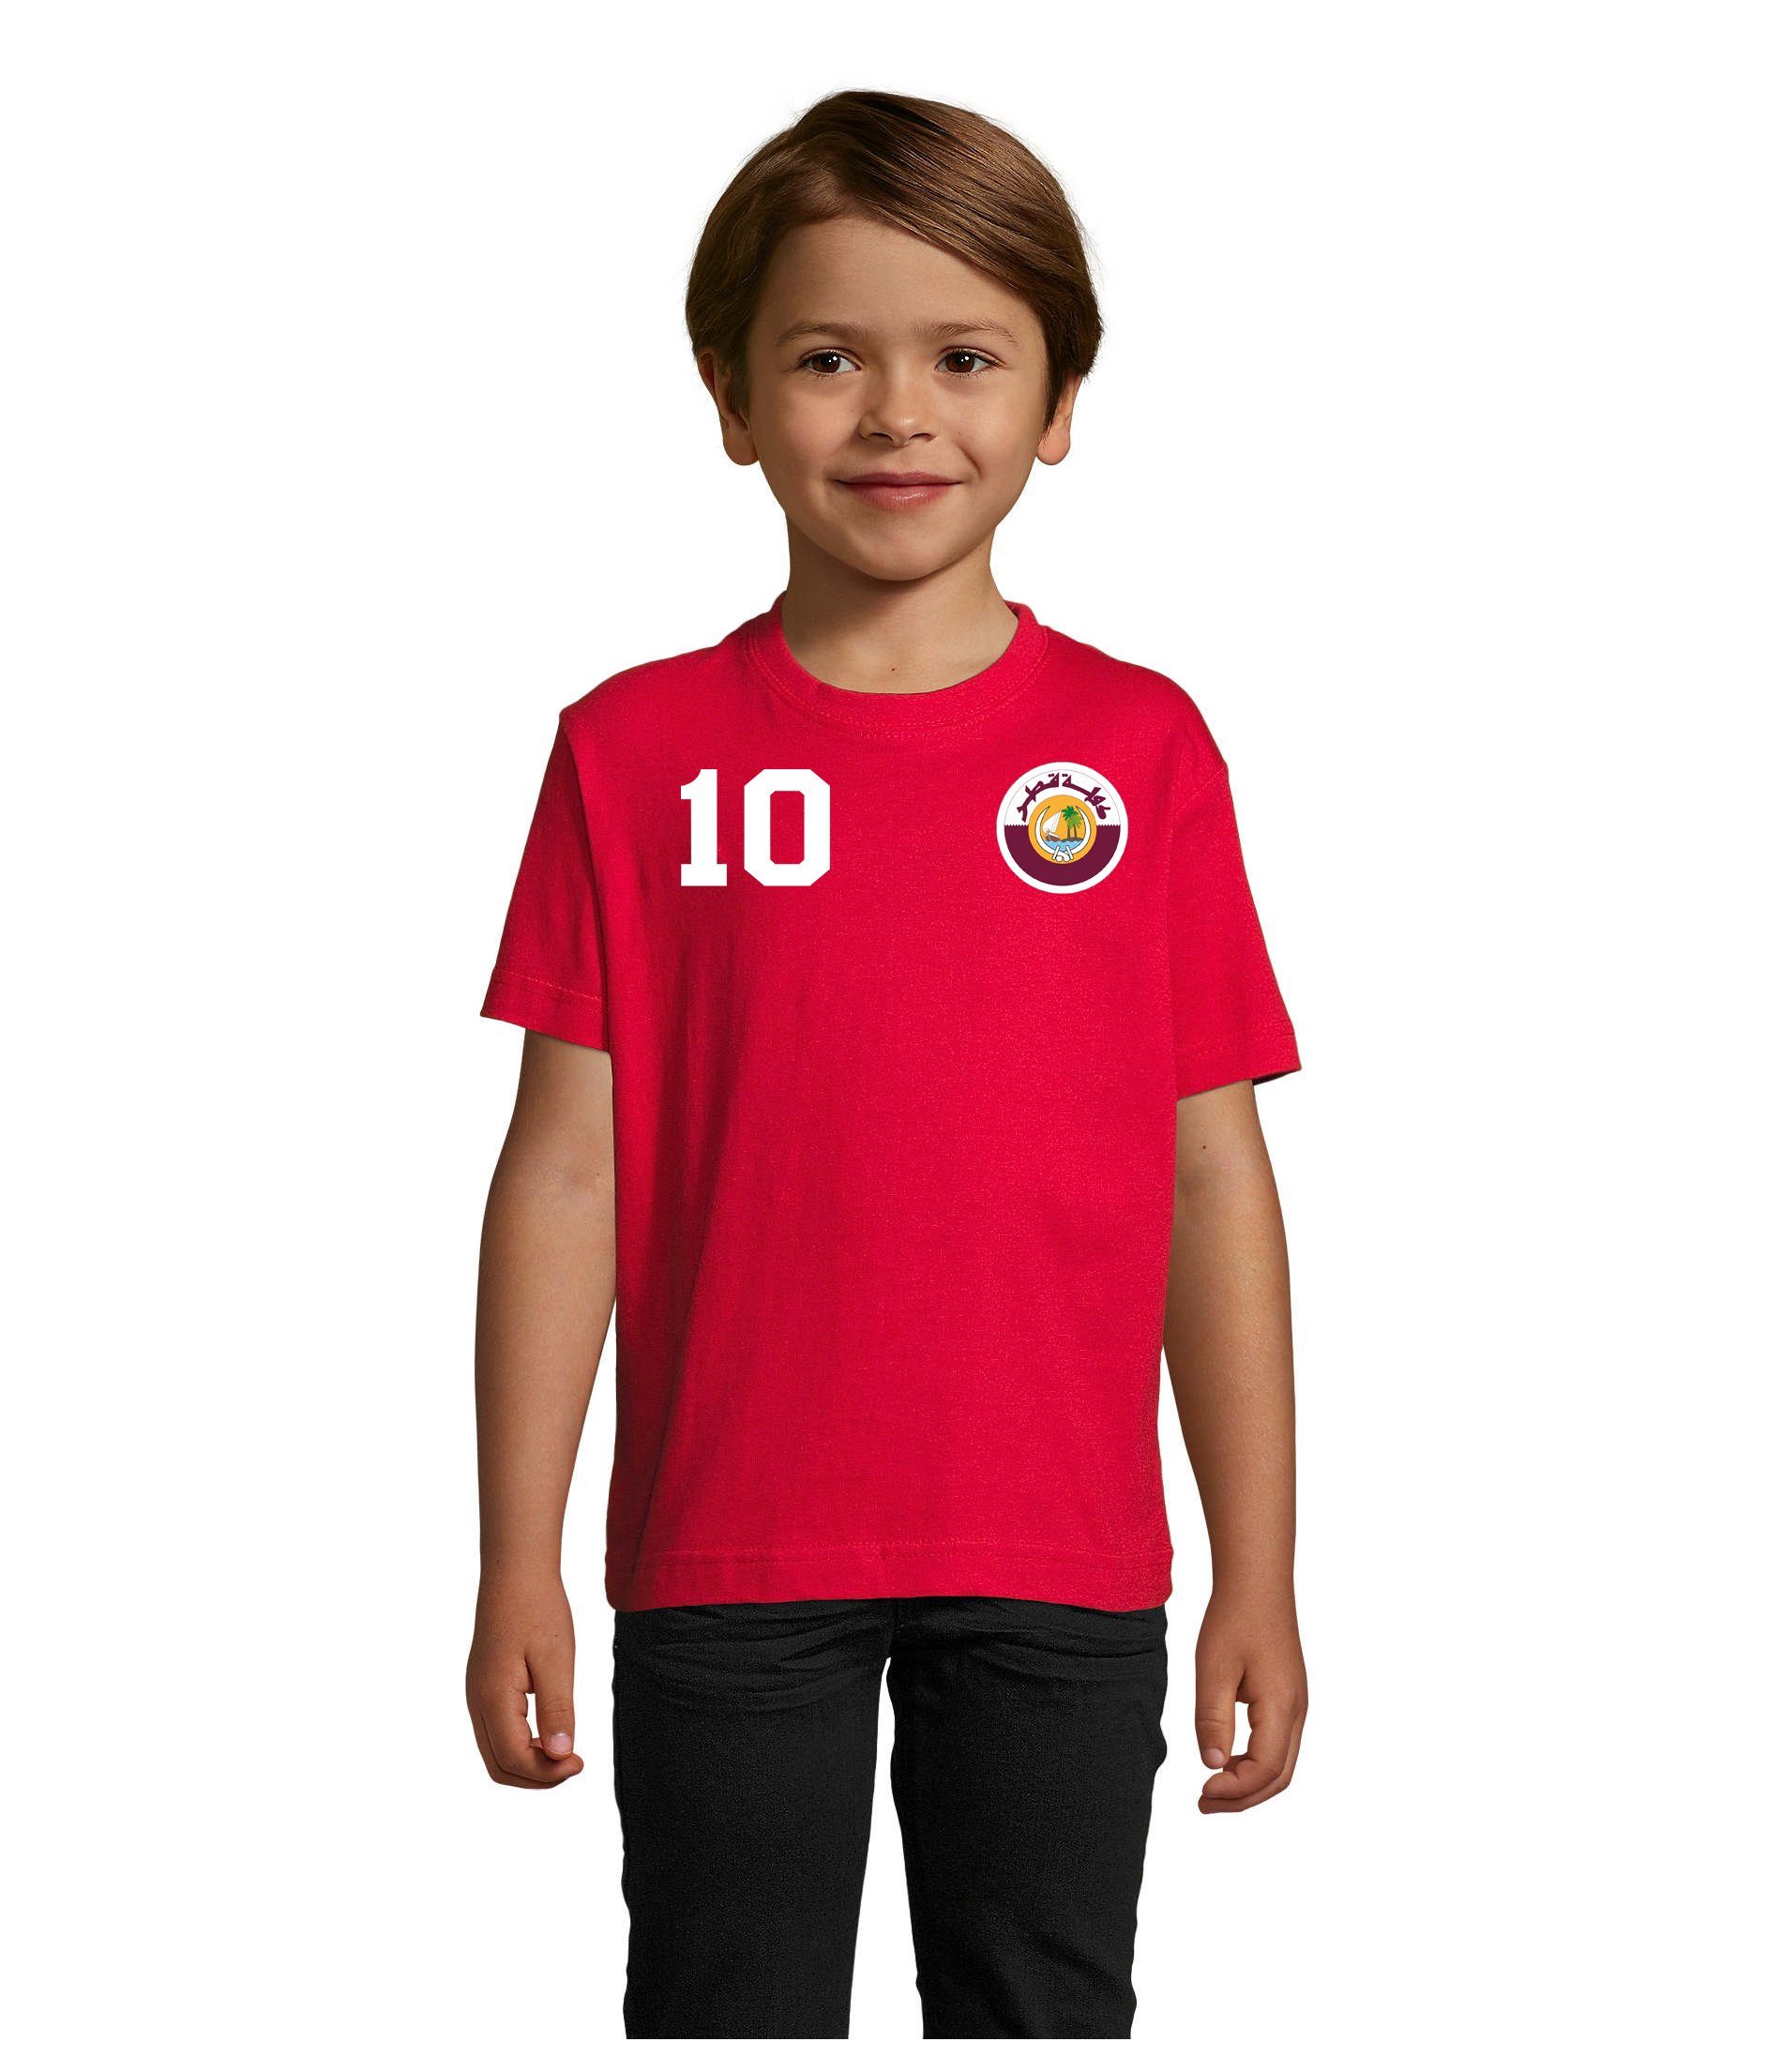 & Qatar Kinder Trikot Sport Weltmeister Blondie Brownie T-Shirt Fußball WM Katar